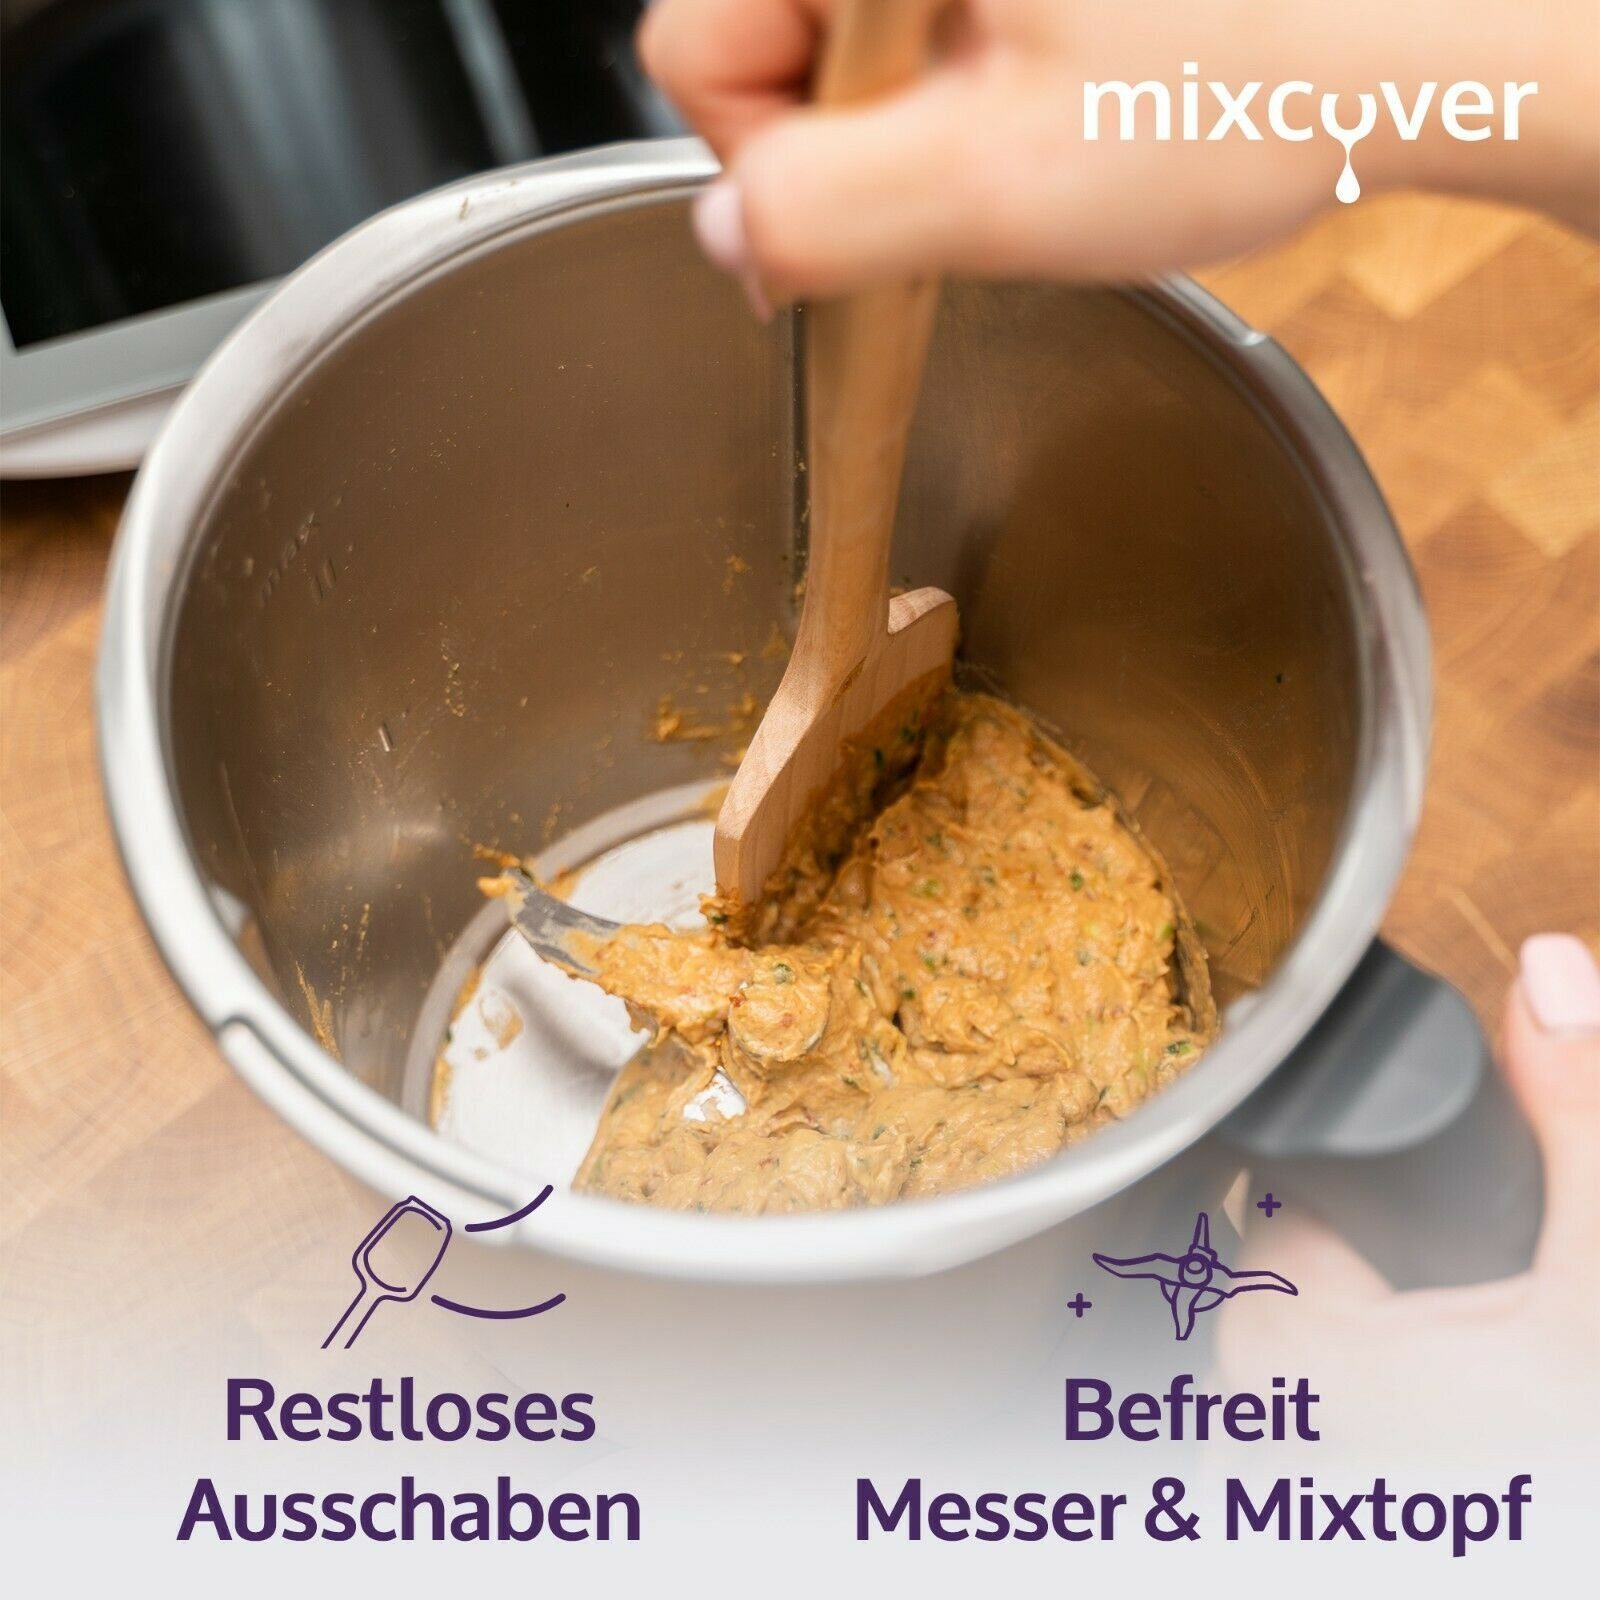 Thermomix TM6,TM5,TM31 Drehkellenspatel Teigschaber Holz-Spatel mixcover für Mixcover Küchenmaschinen-Adapter Nachhaltiger